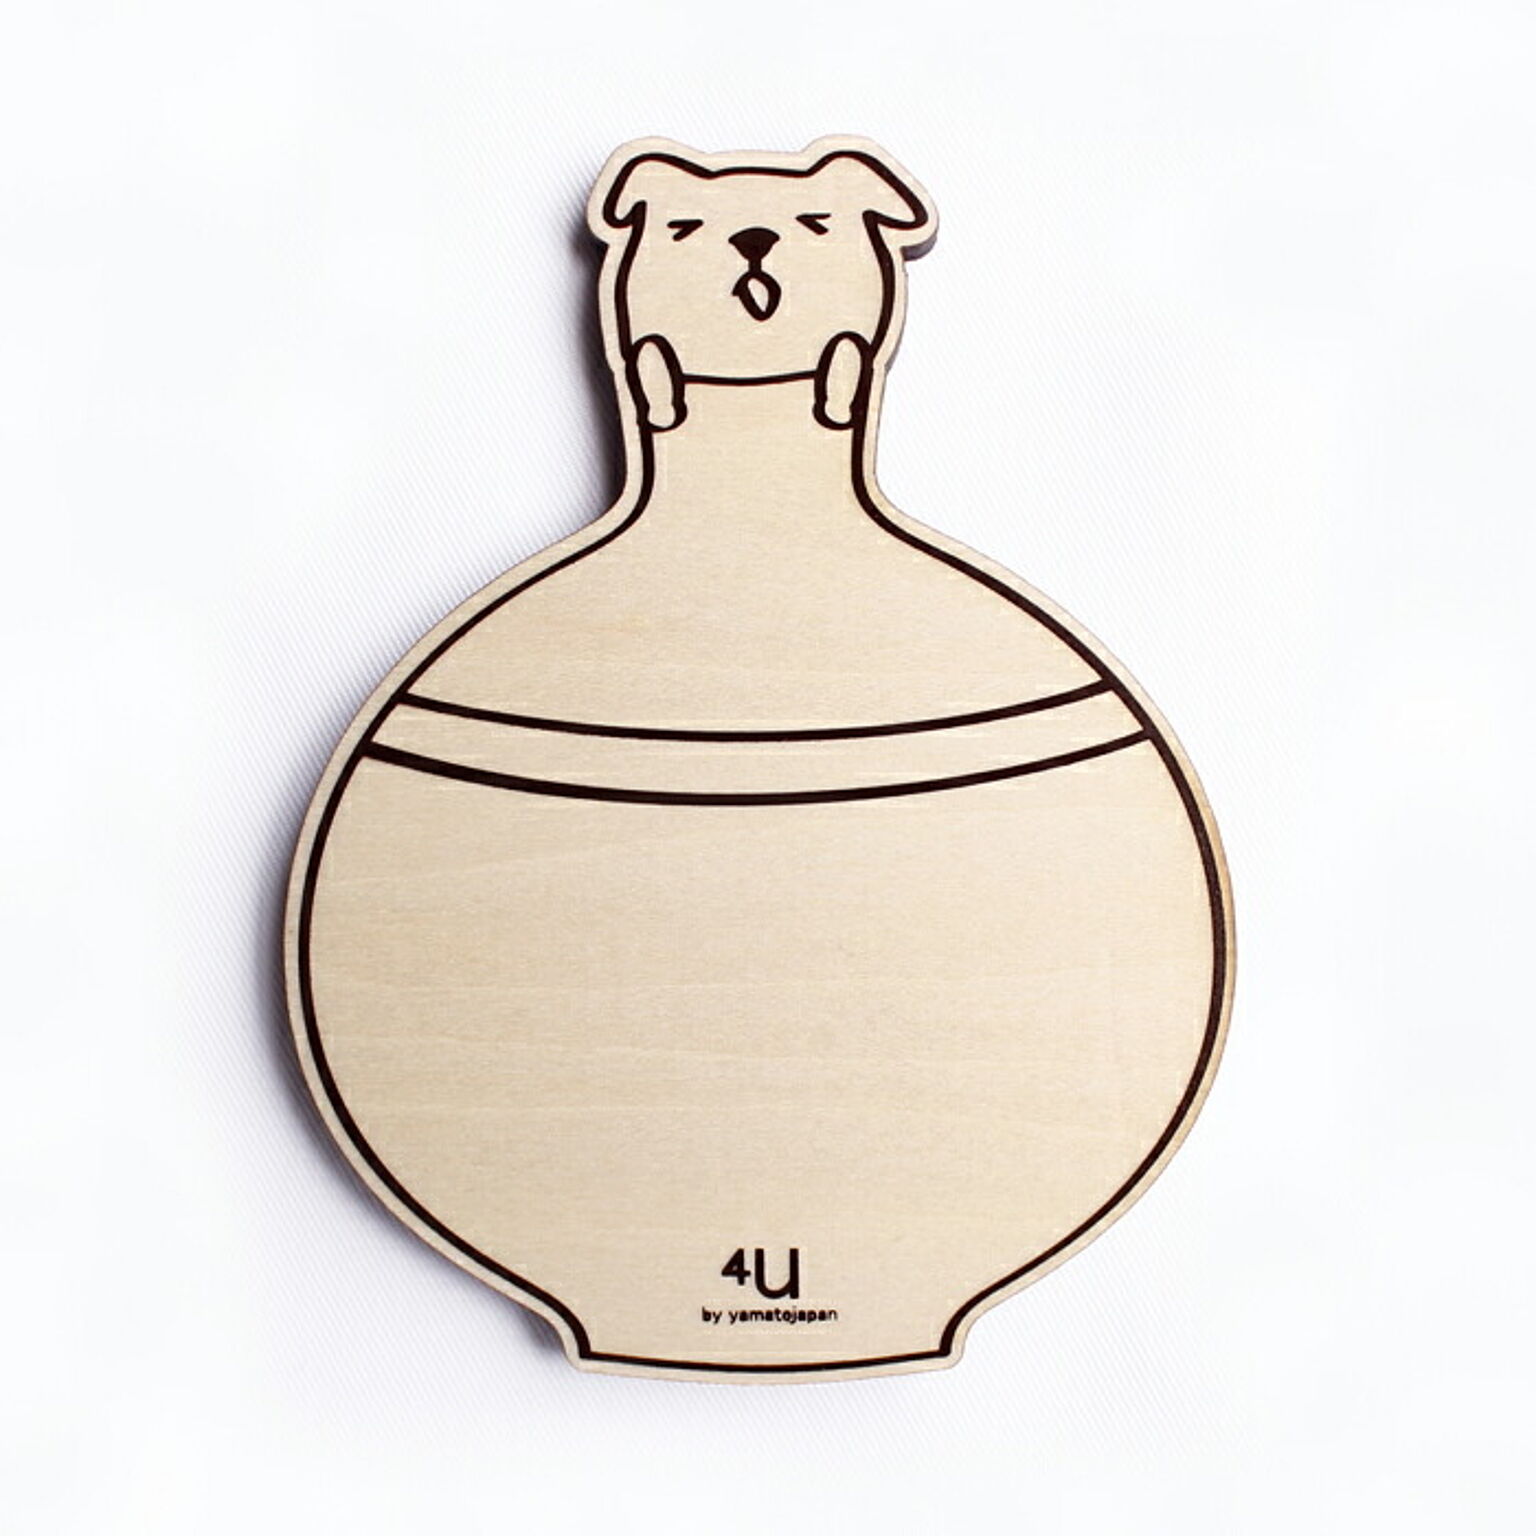 コースター 木製 北欧 日本製 corster vase animals ウサギ ネコ クマ イヌ 木 新築祝い お祝い 誕生日 ギフト